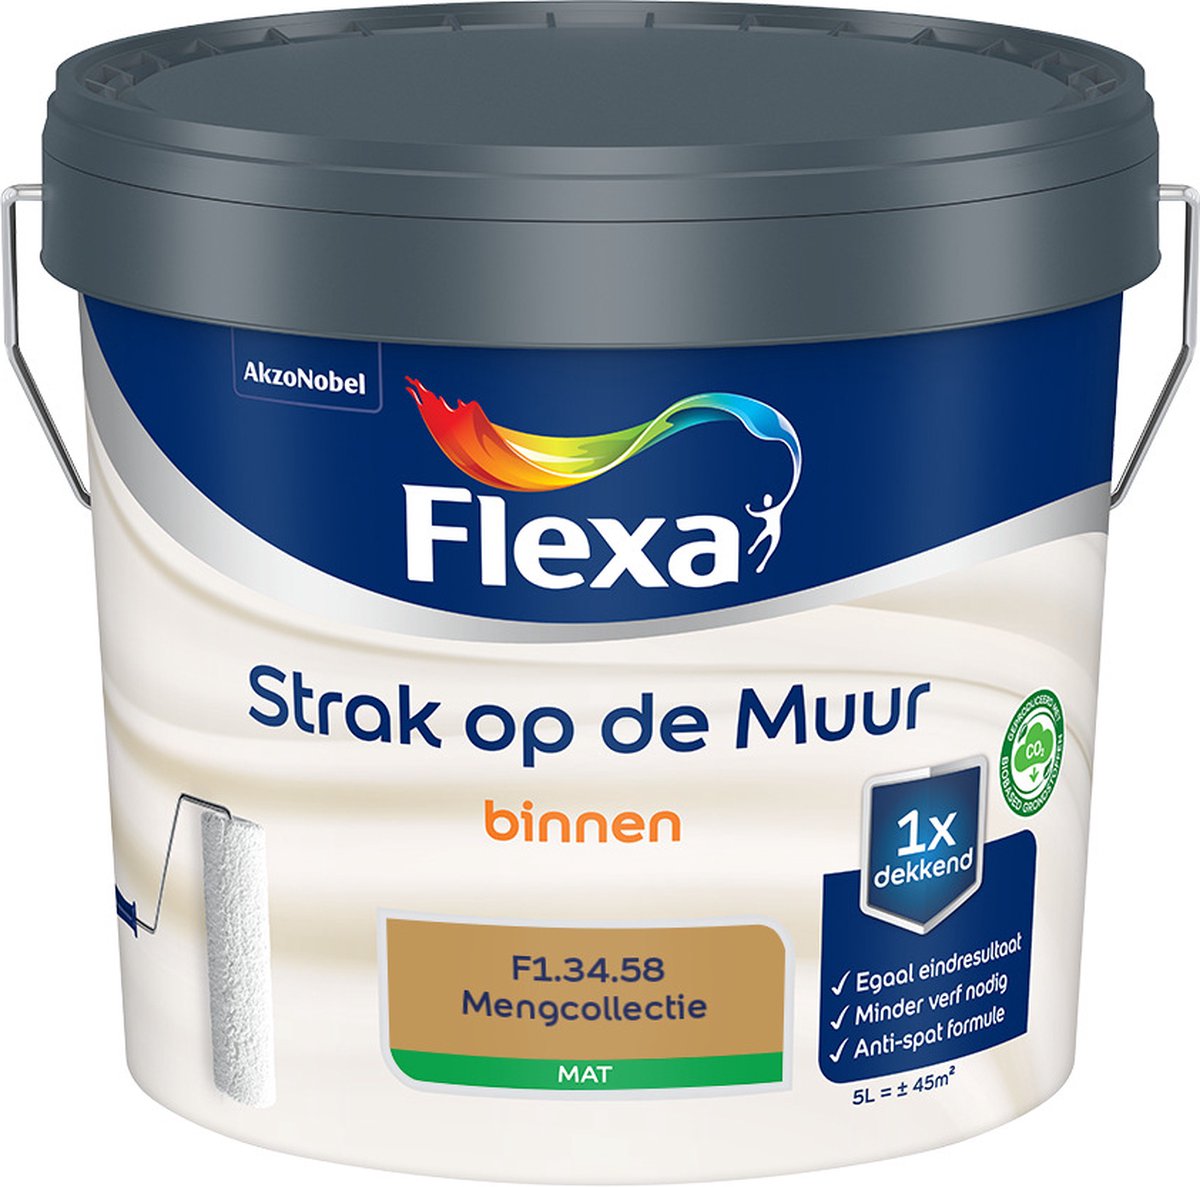 Flexa Strak op de muur - Muurverf - Mengcollectie - F1.34.58 - 5 Liter